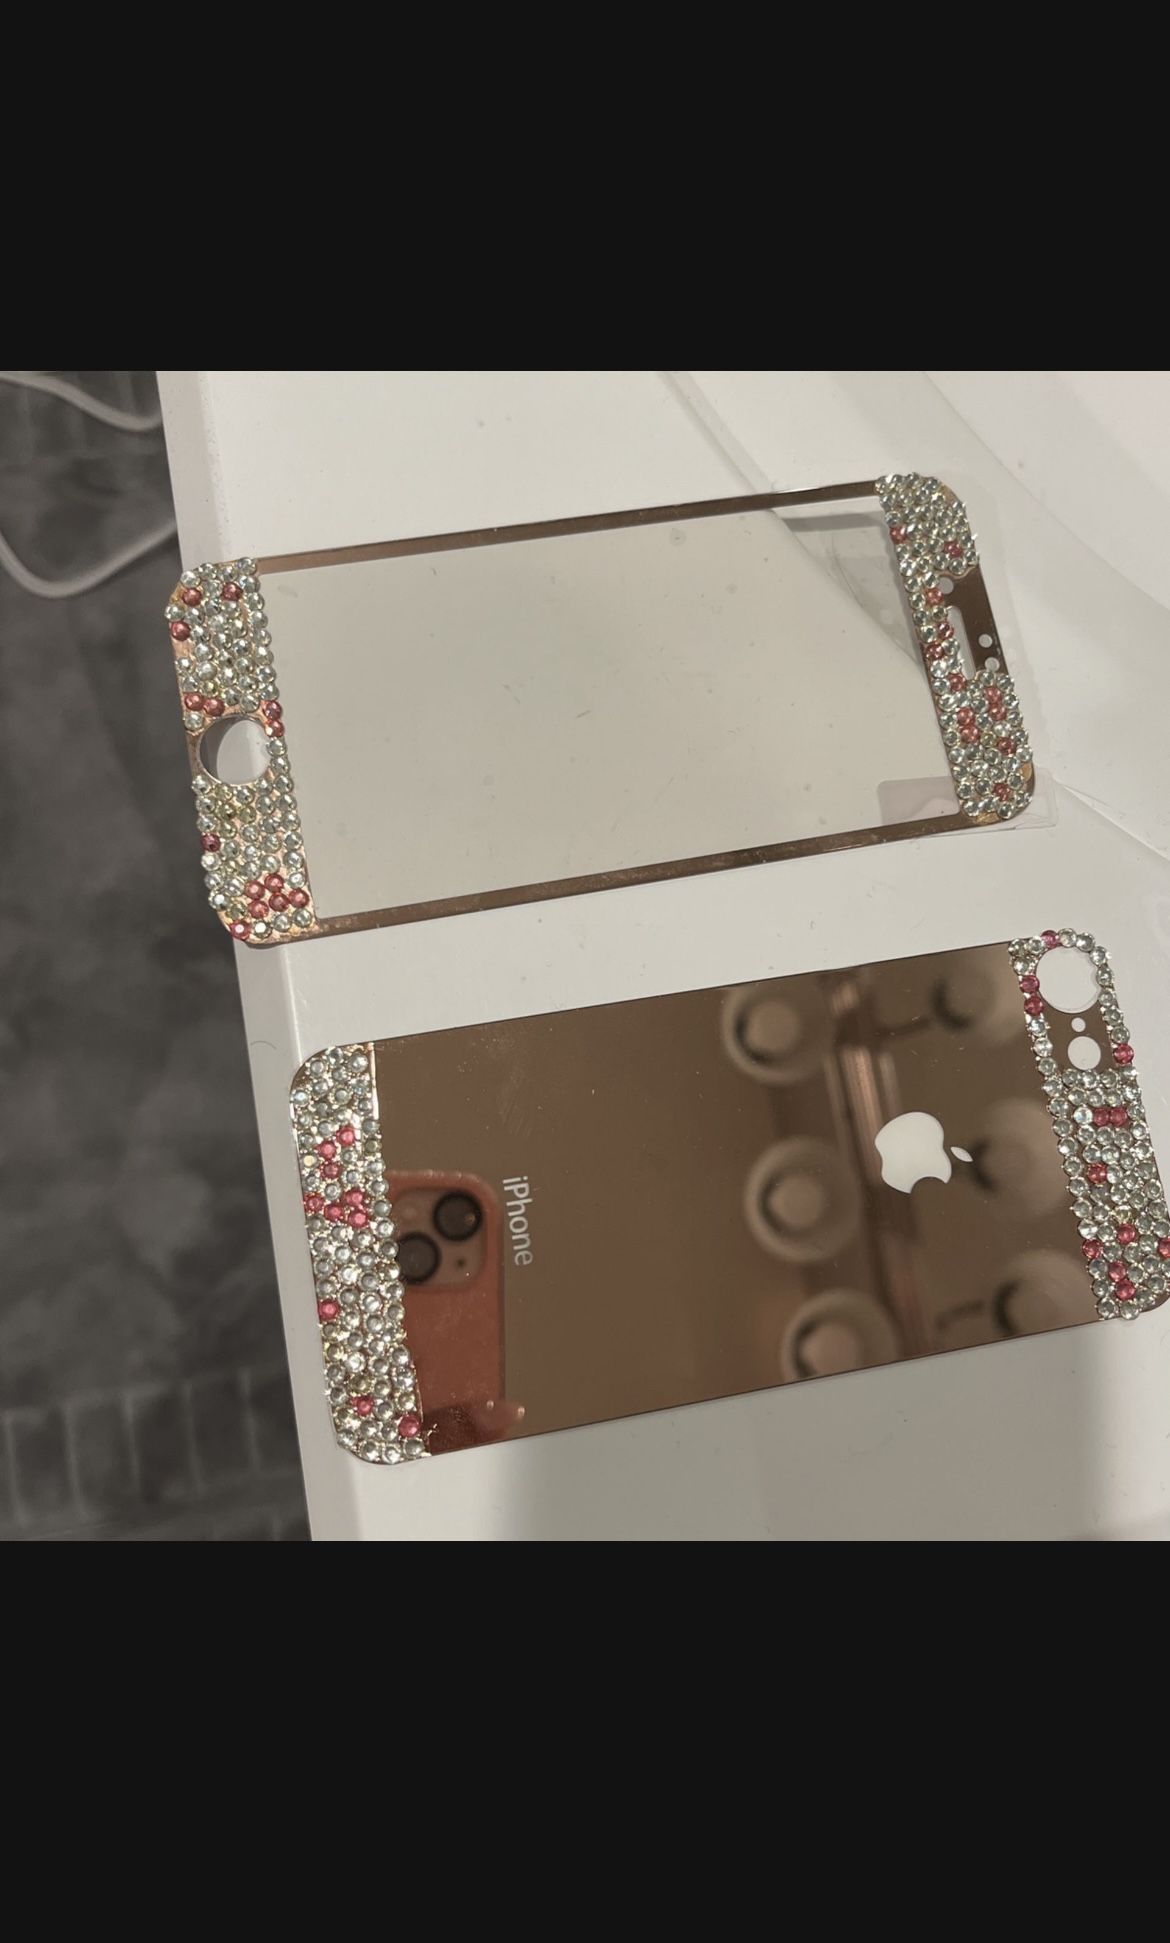 iPhone 7 Case 